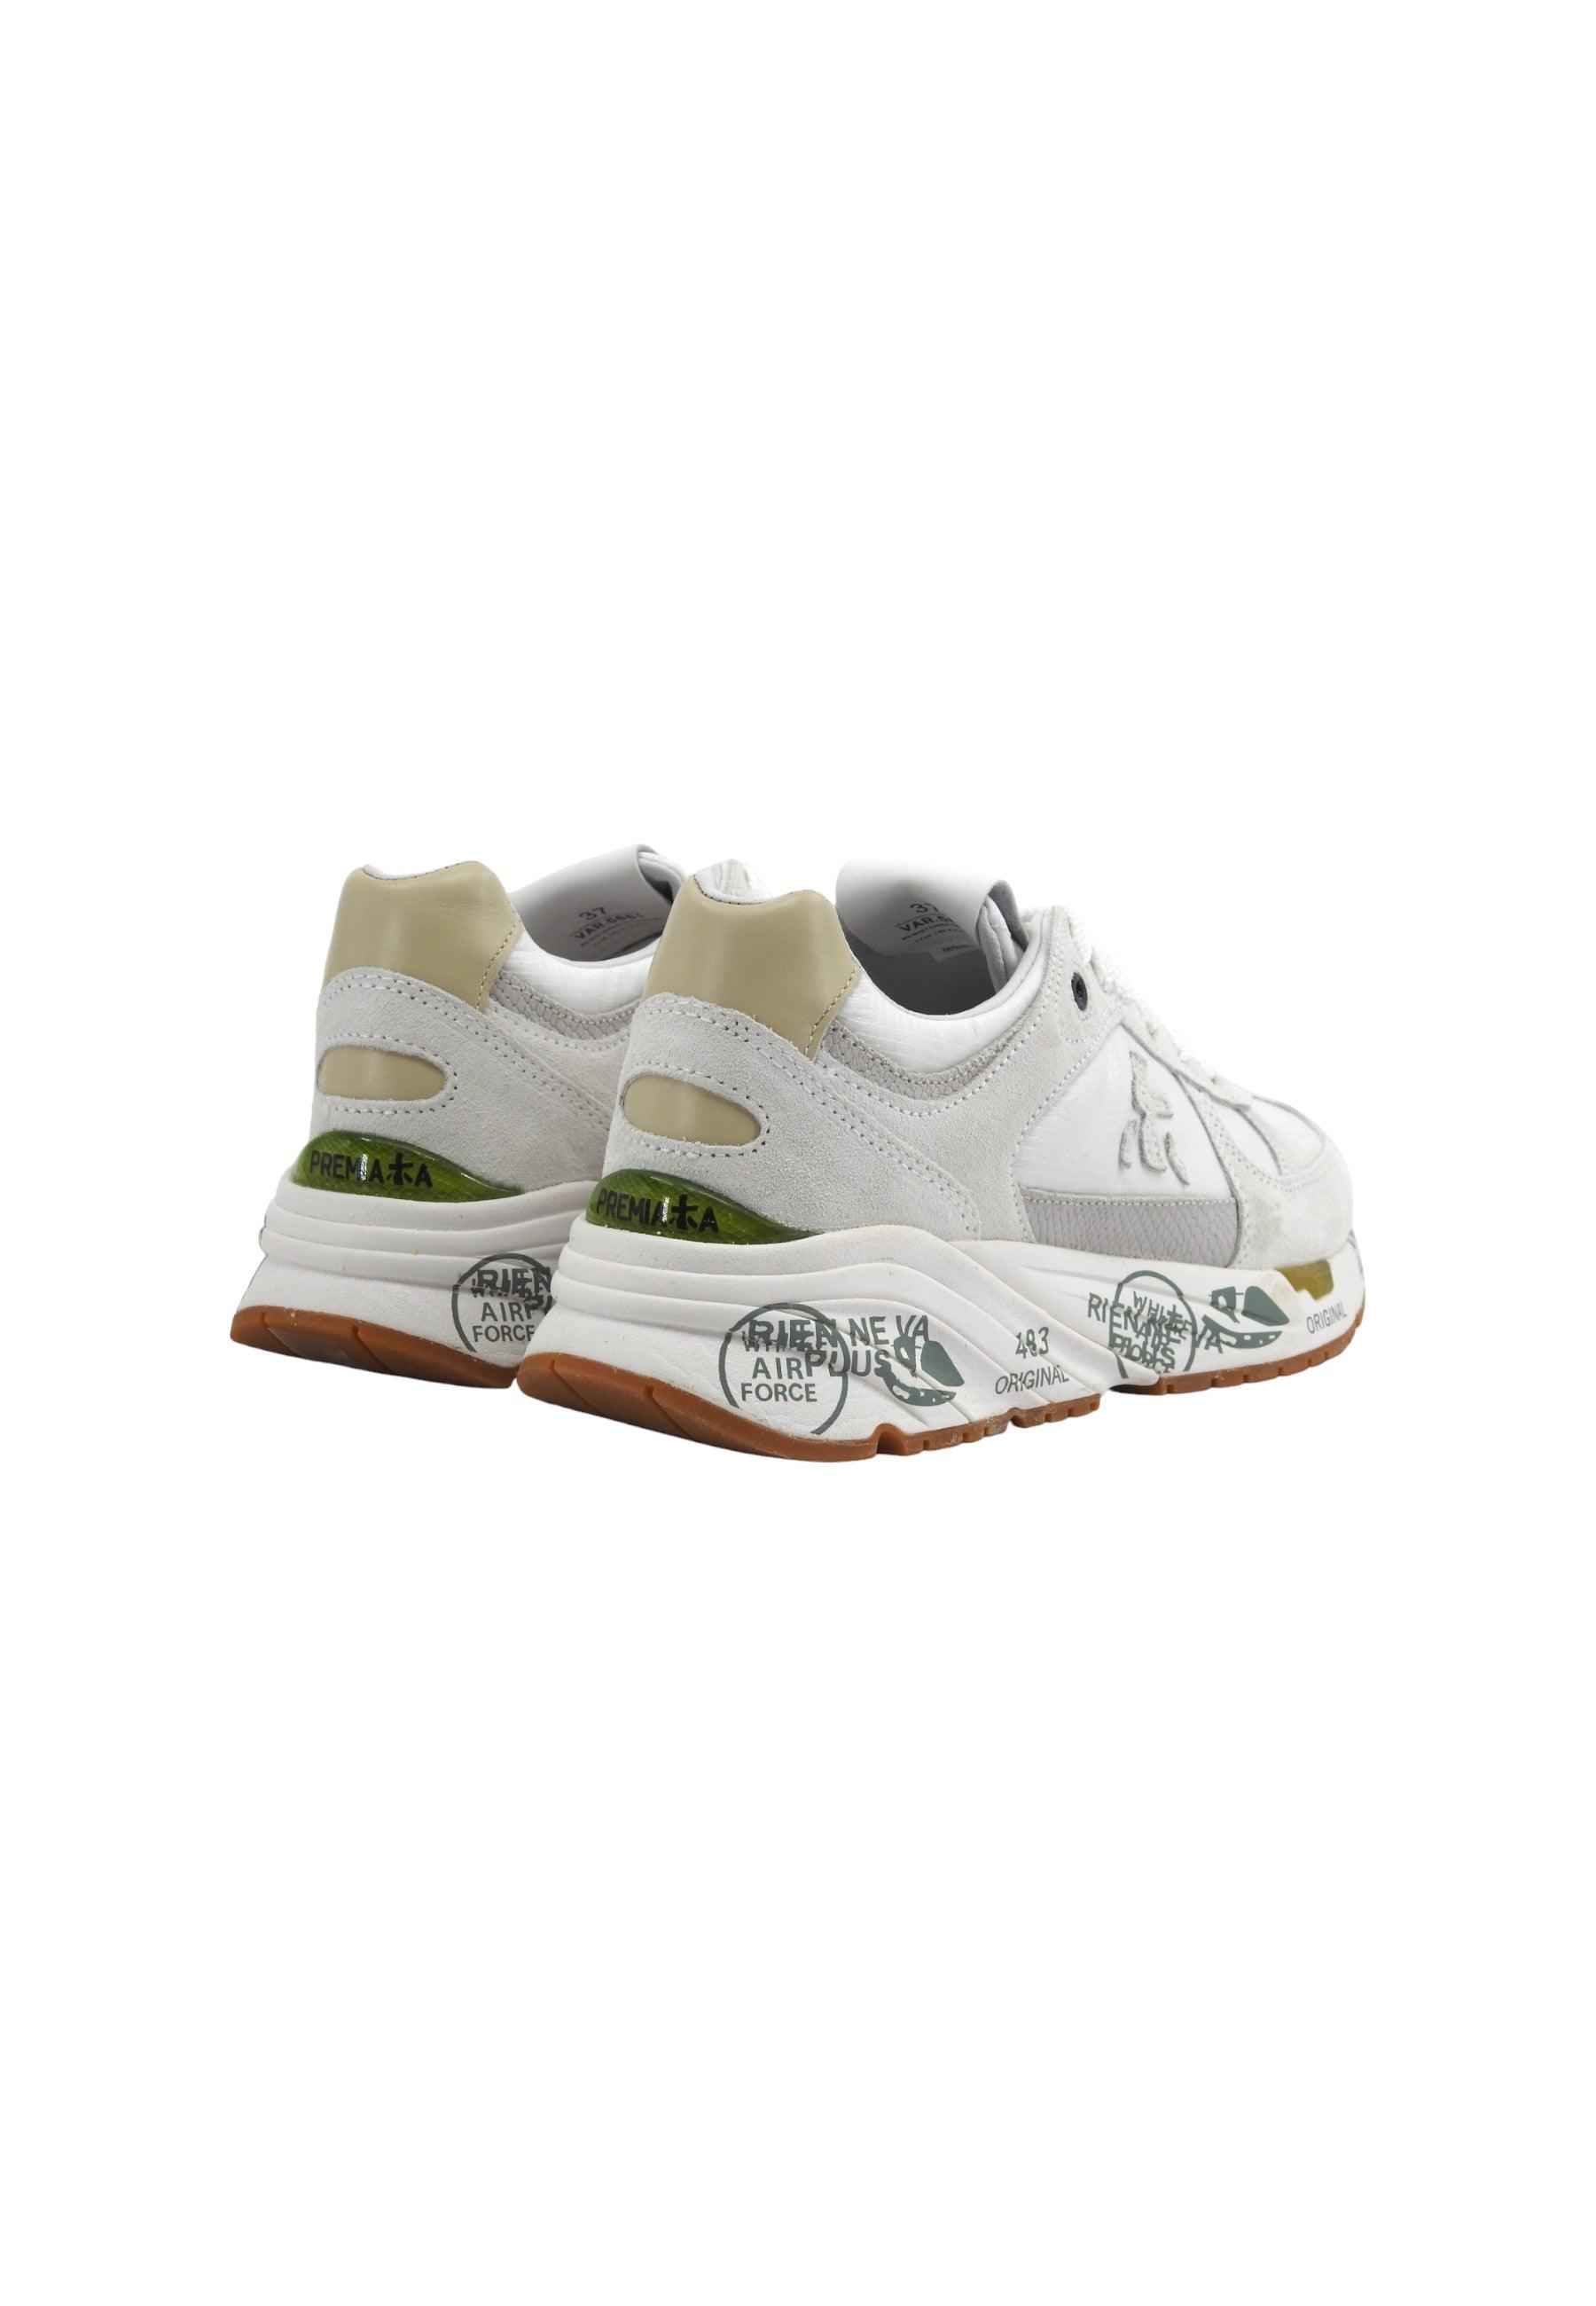 PREMIATA Sneaker Donna White Light Grey MASED-5661 - Sandrini Calzature e Abbigliamento